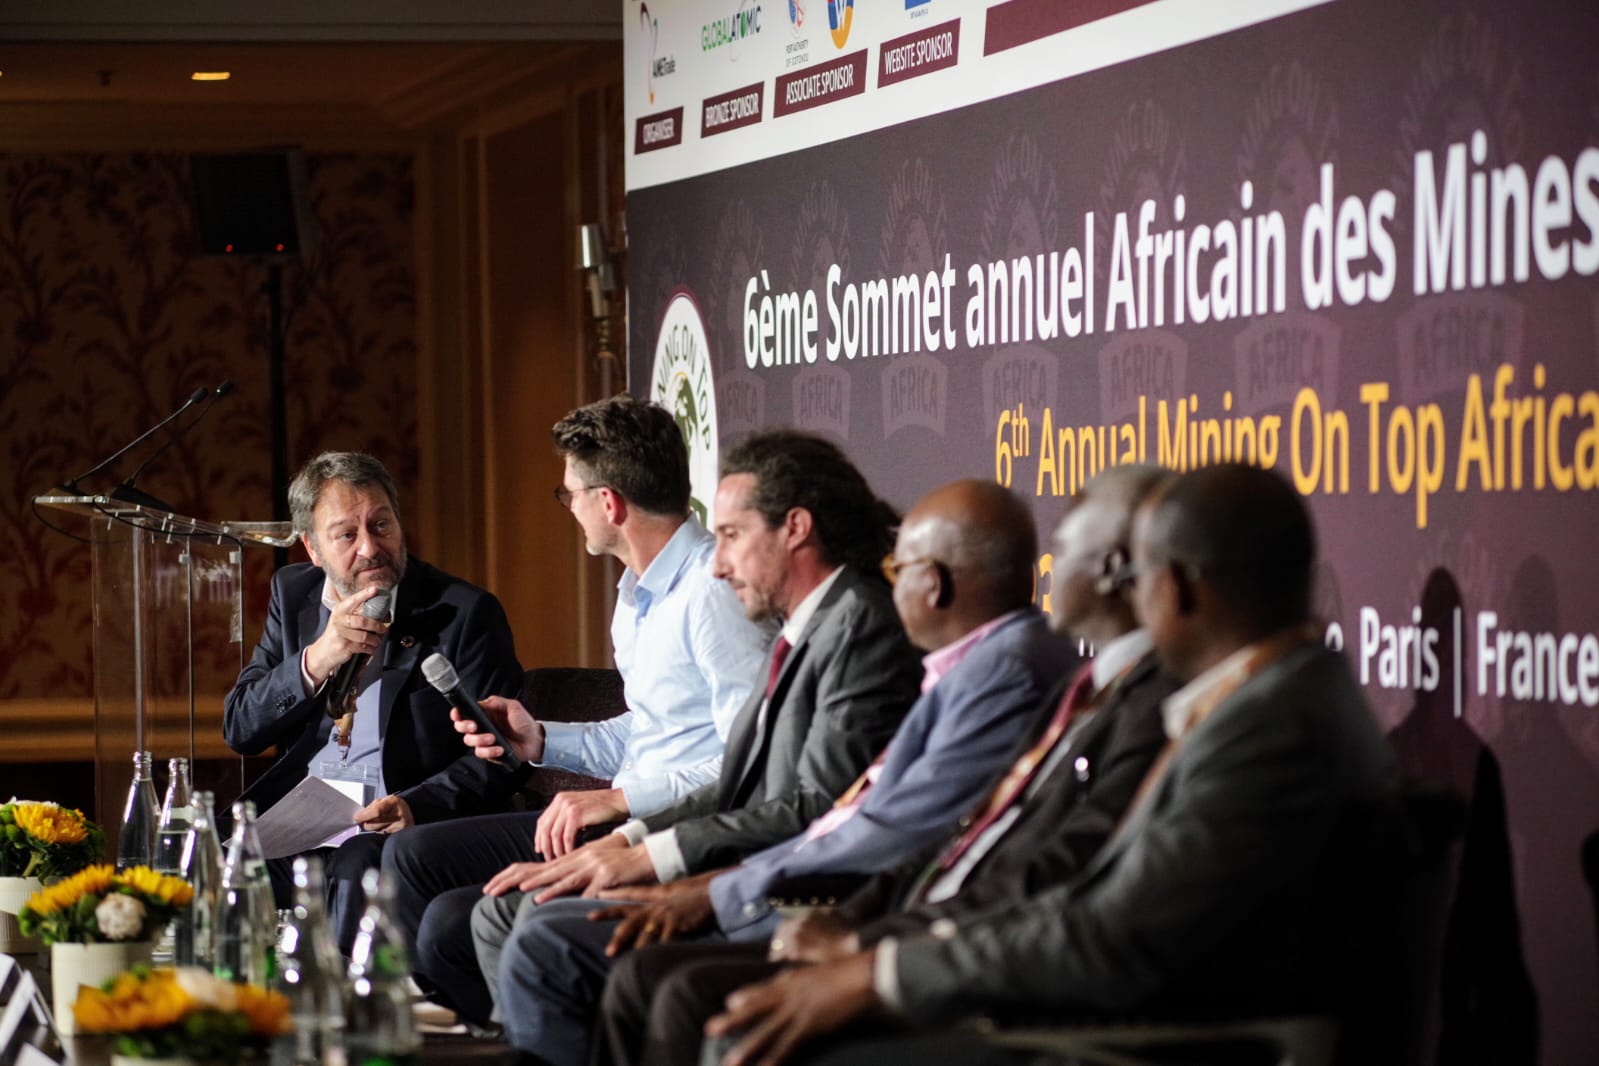 Sommet des mines africaines de Paris, une rencontre résolument tournée vers la recherche d’impacts positifs